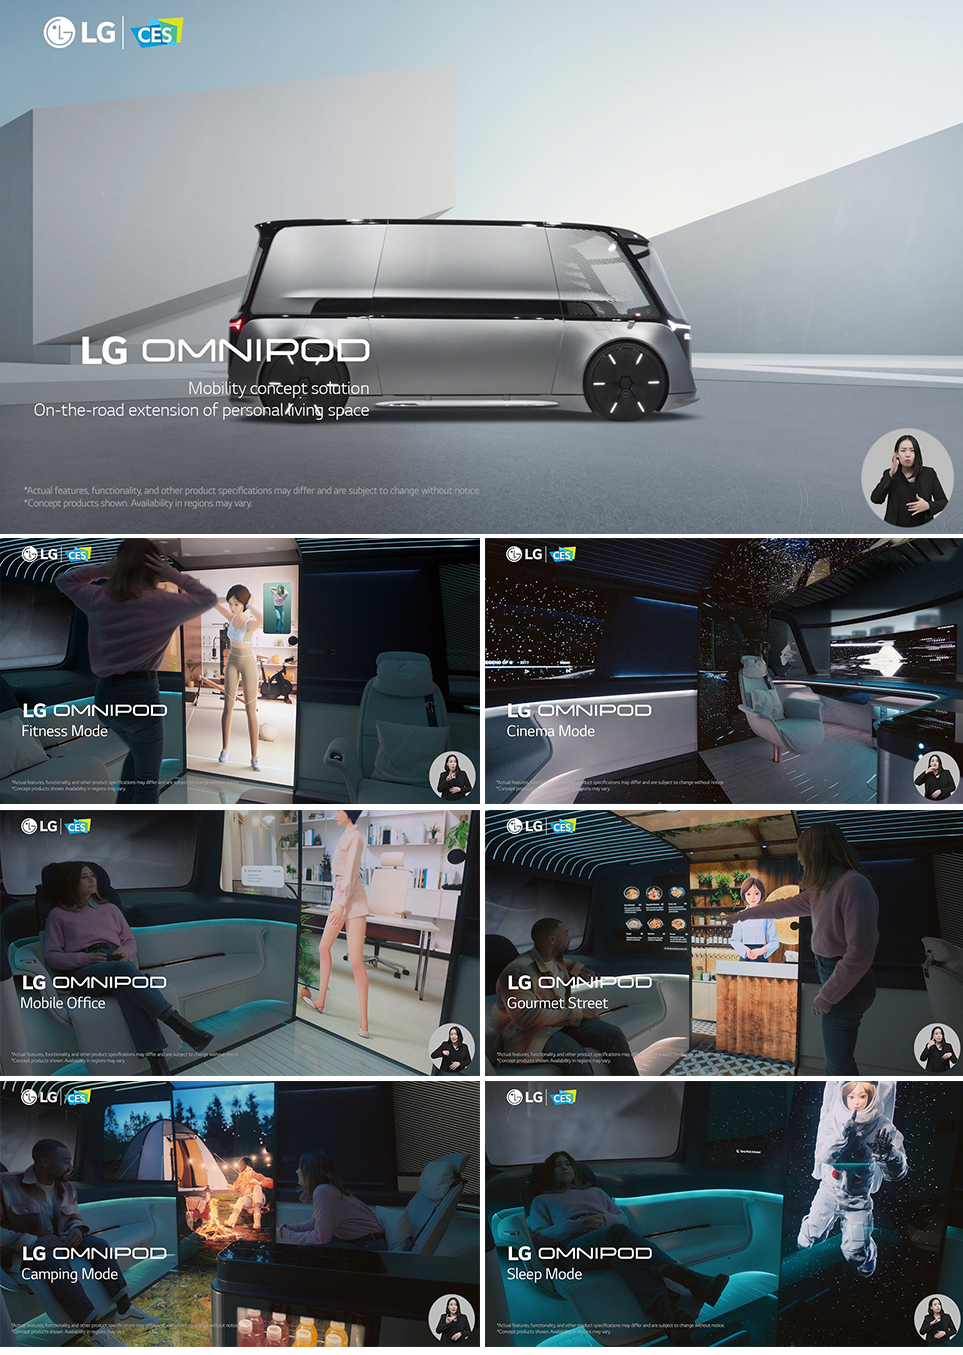 개인화, 맞춤화된 공간에서 일상을 즐길 수 있도록 도와주는 LG전자 미래 모빌리티 기술 ‘LG 옴니팟’